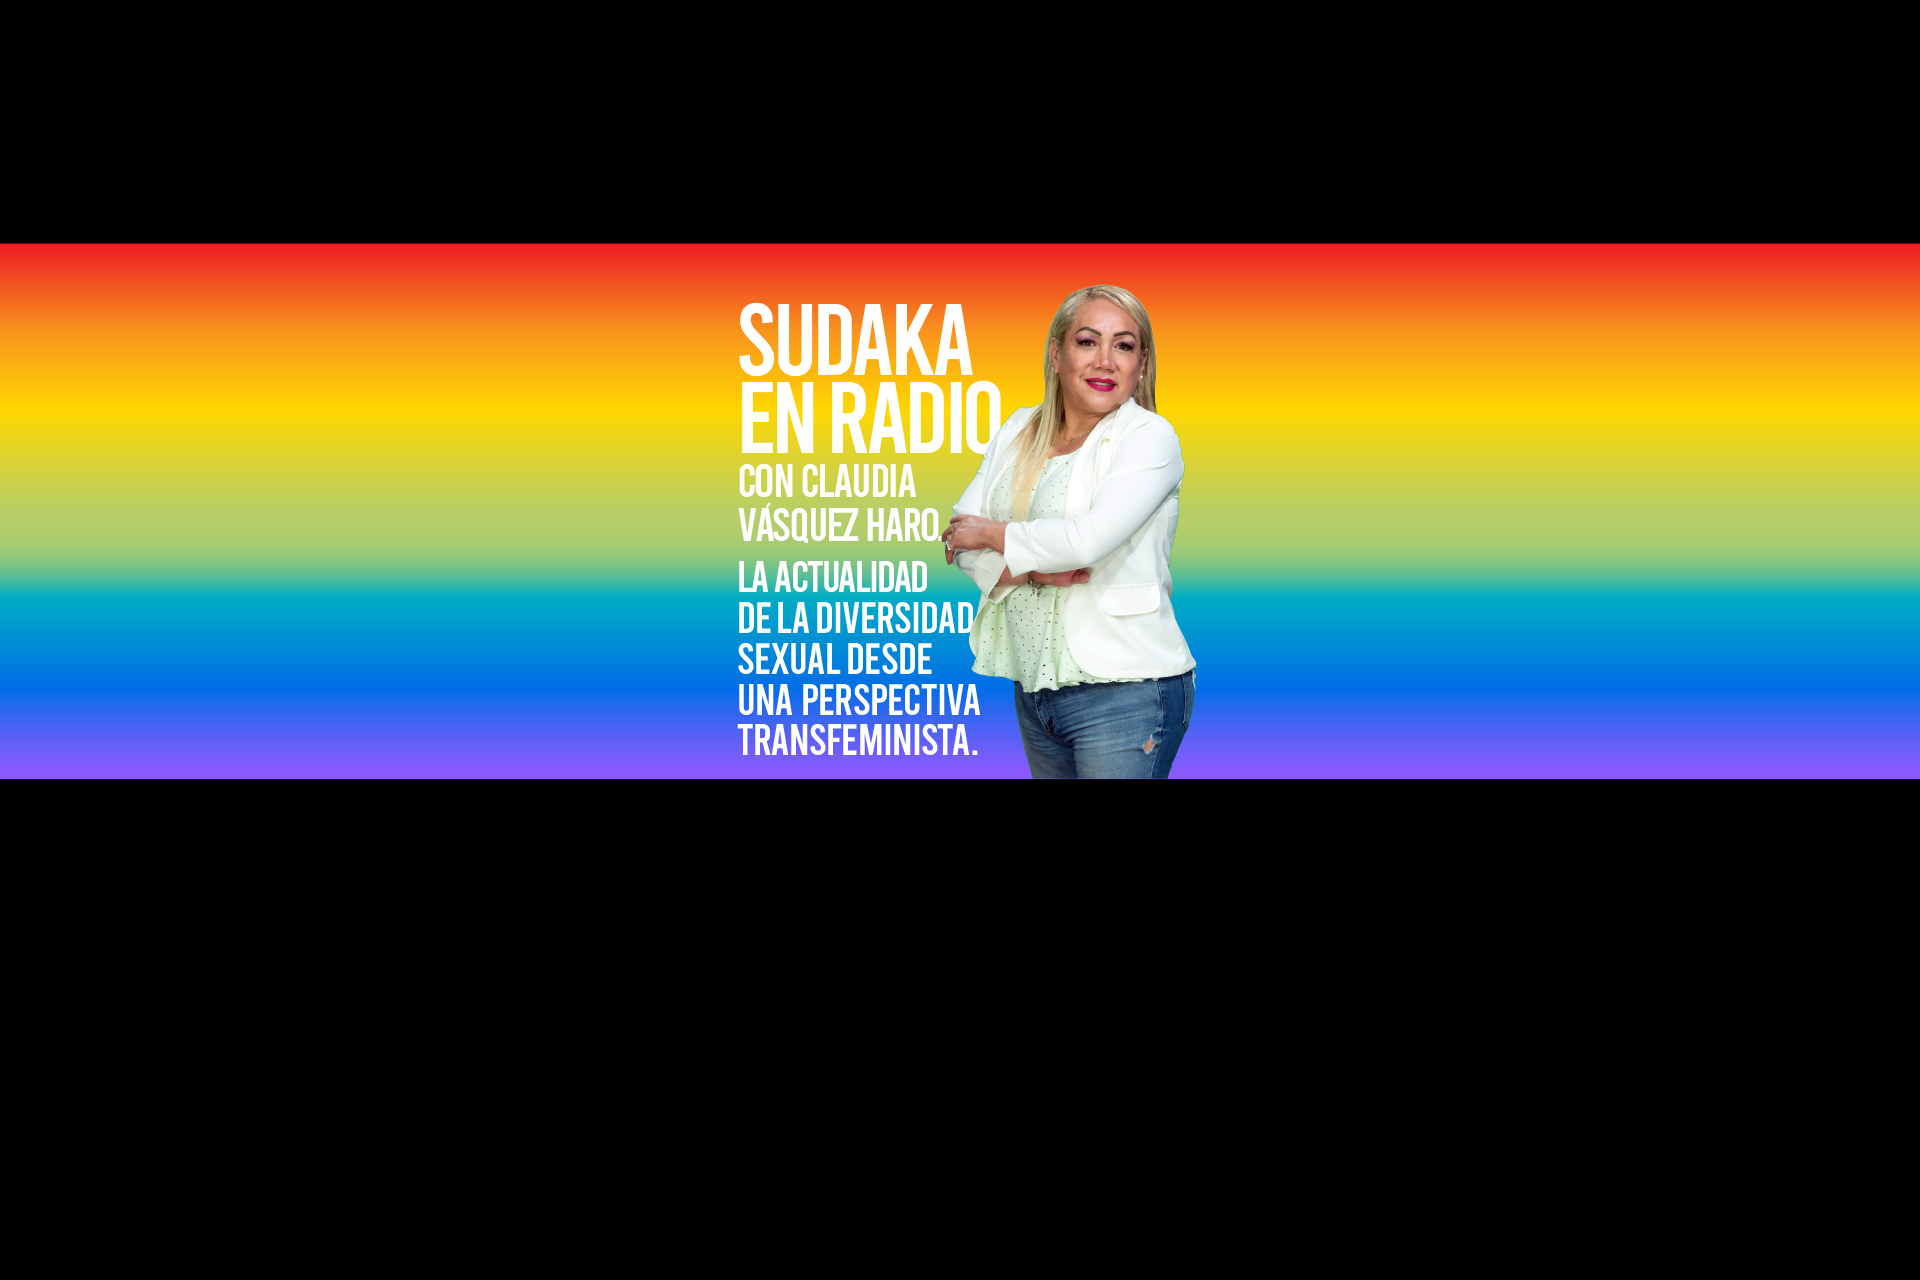 SUDAKA EN RADIO